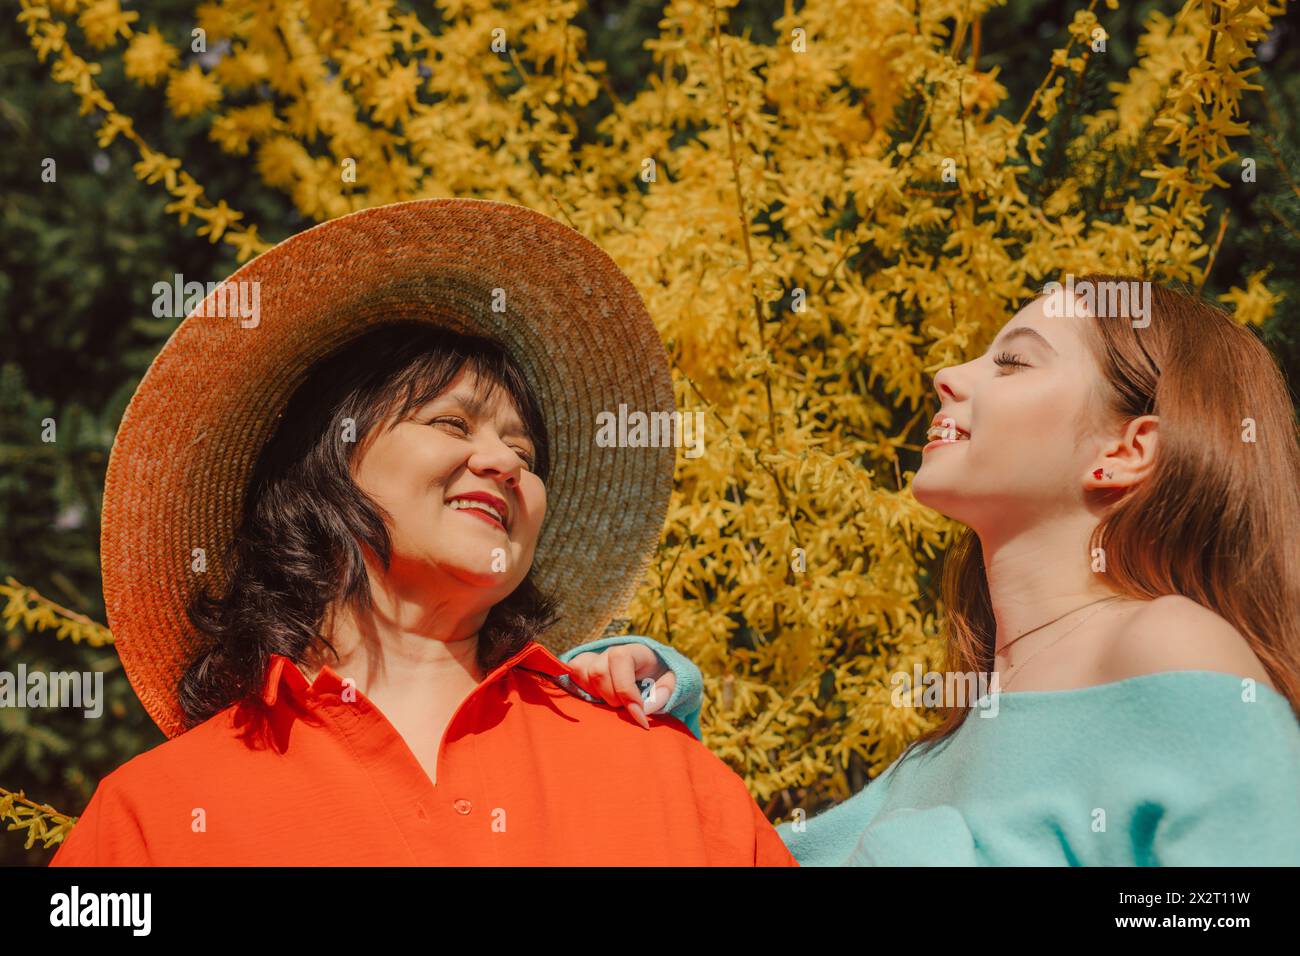 Glückliche Mutter und Tochter genießen Sonnenlicht in der Nähe des gelben Blütenbaums Stockfoto